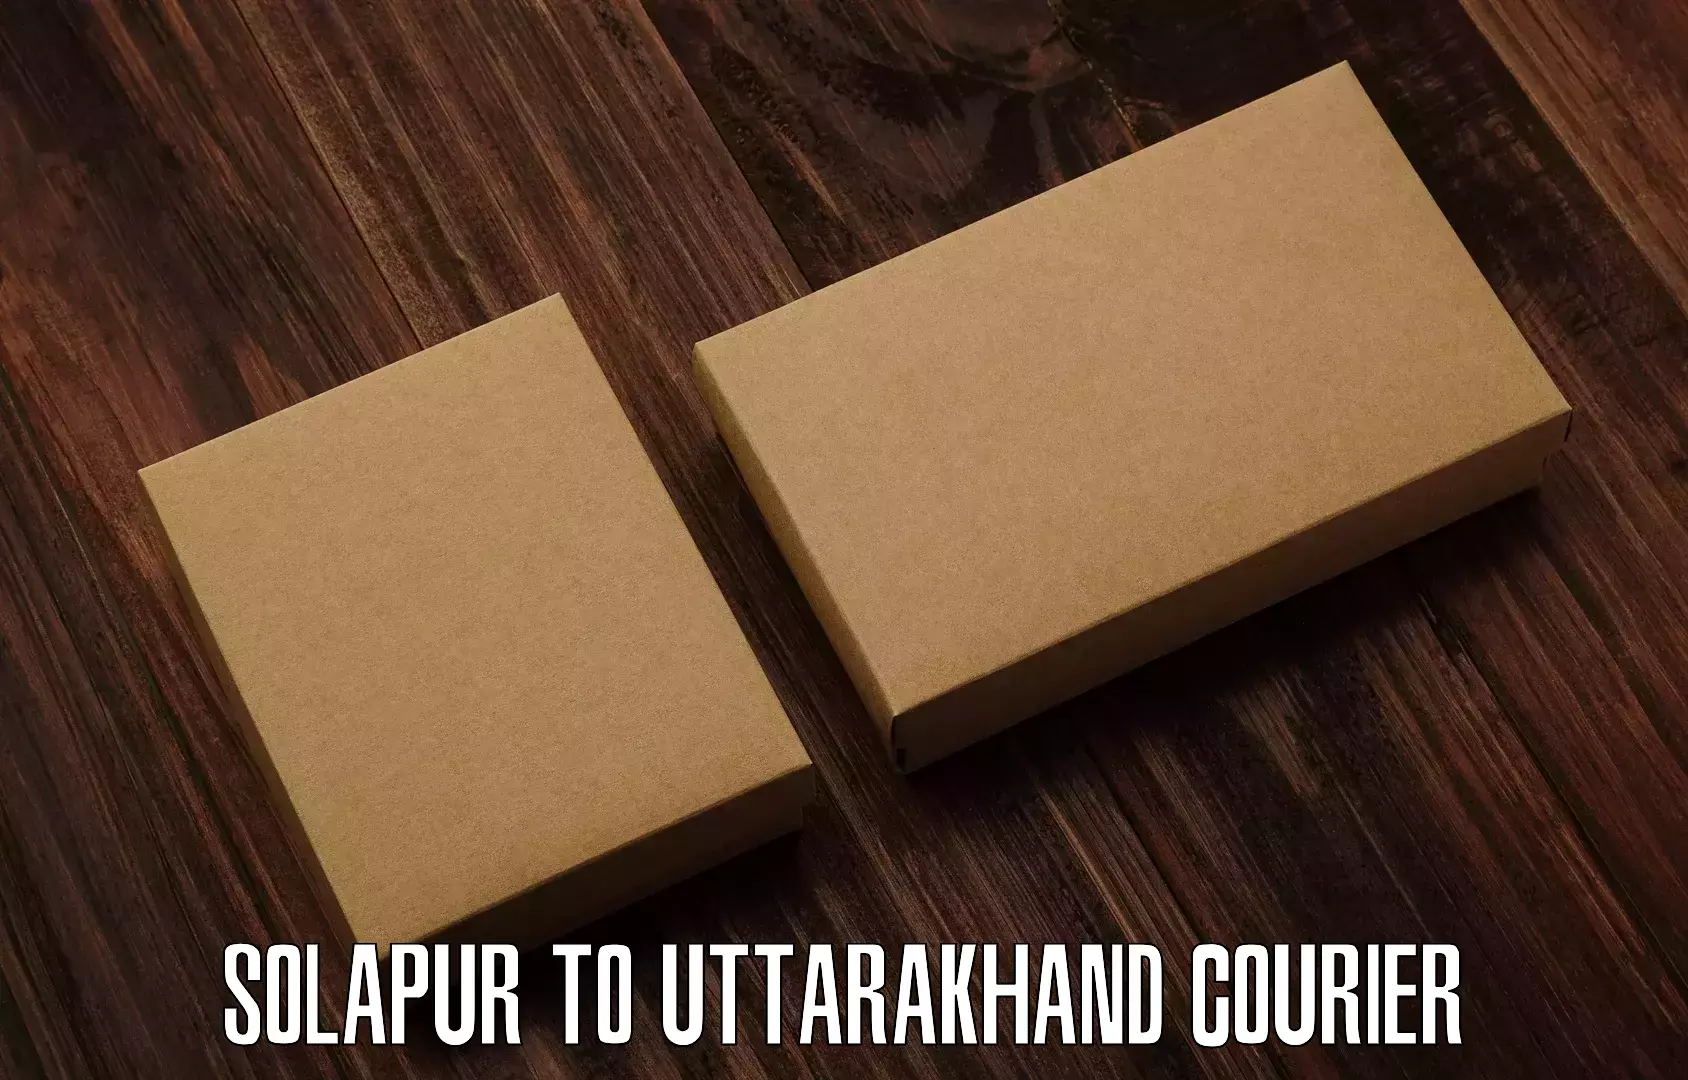 Logistics service provider Solapur to Uttarakhand